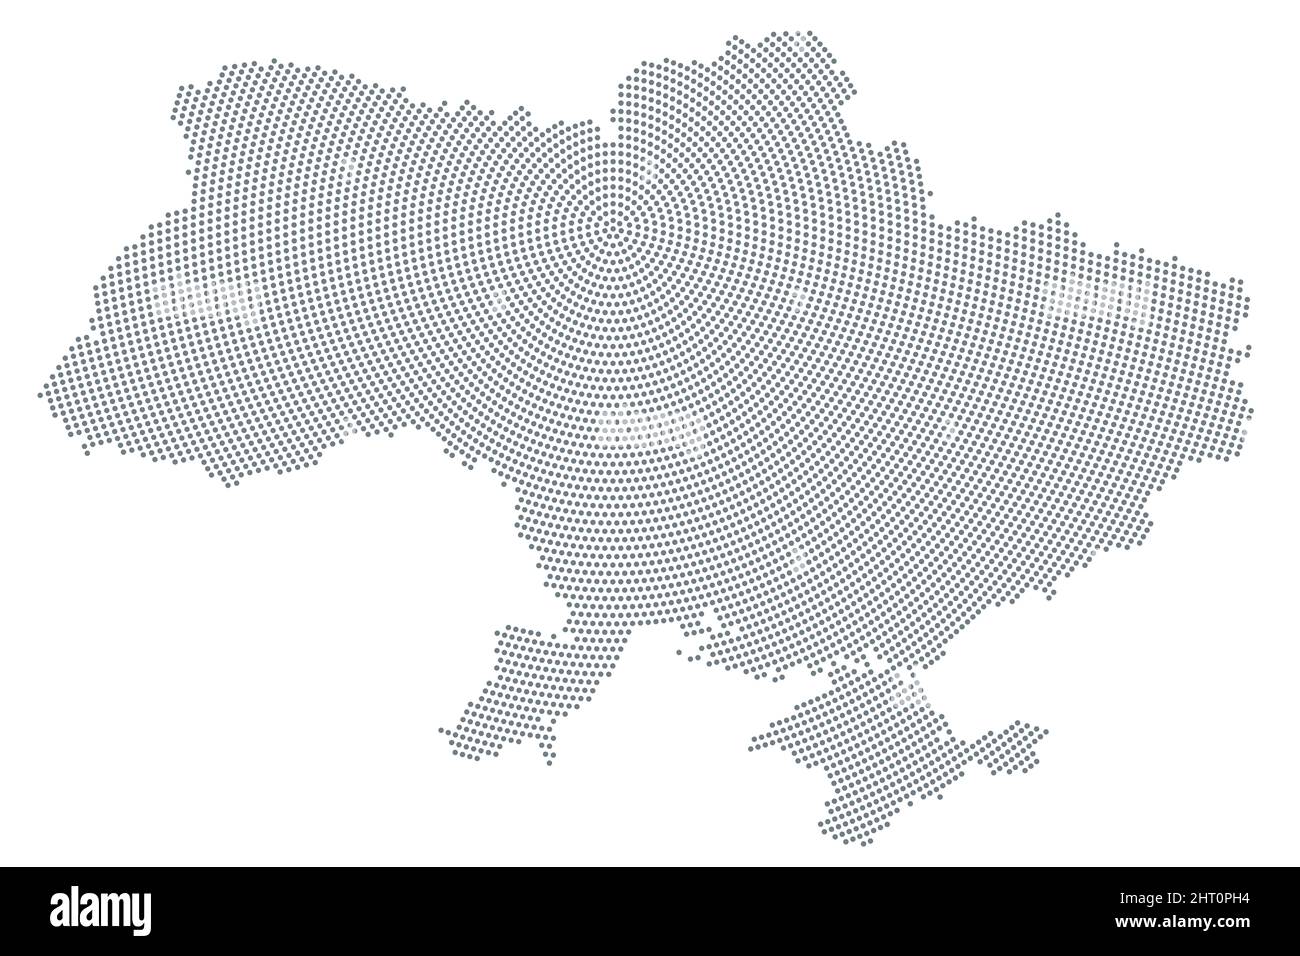 Ukraine-Karte, radiales Punktmuster. Graue Punkte aus der Hauptstadt Kiew (Kiew) nach außen und bilden die Silhouette des osteuropäischen Landes. Stockfoto